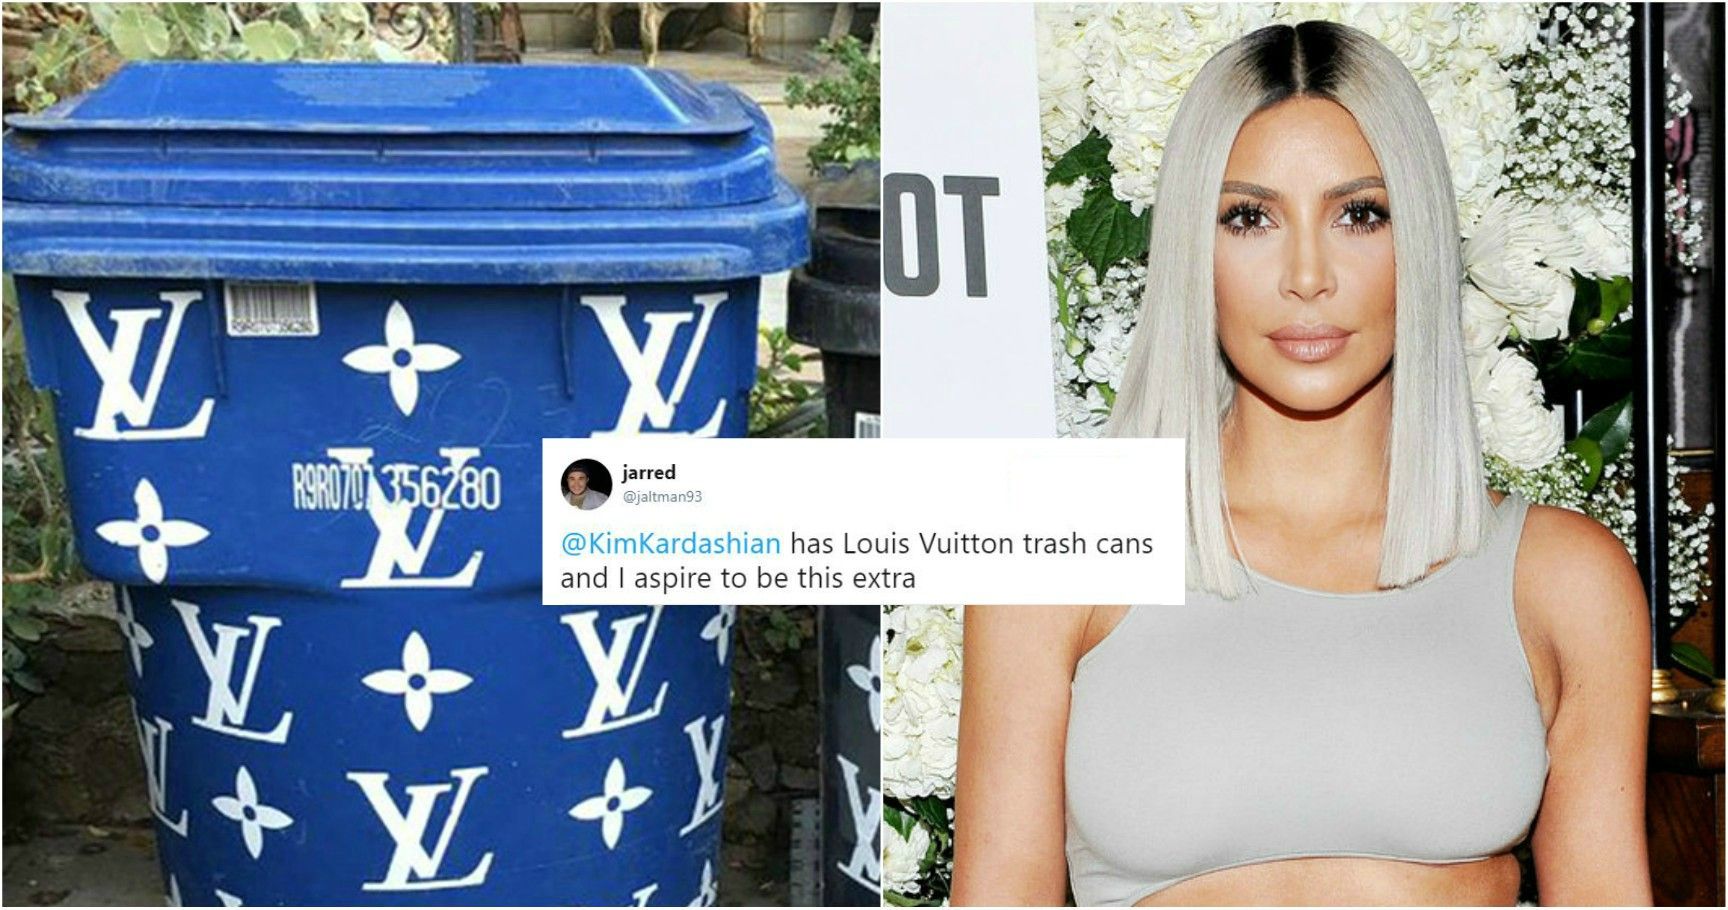 Louis Vuitton Trash Meme